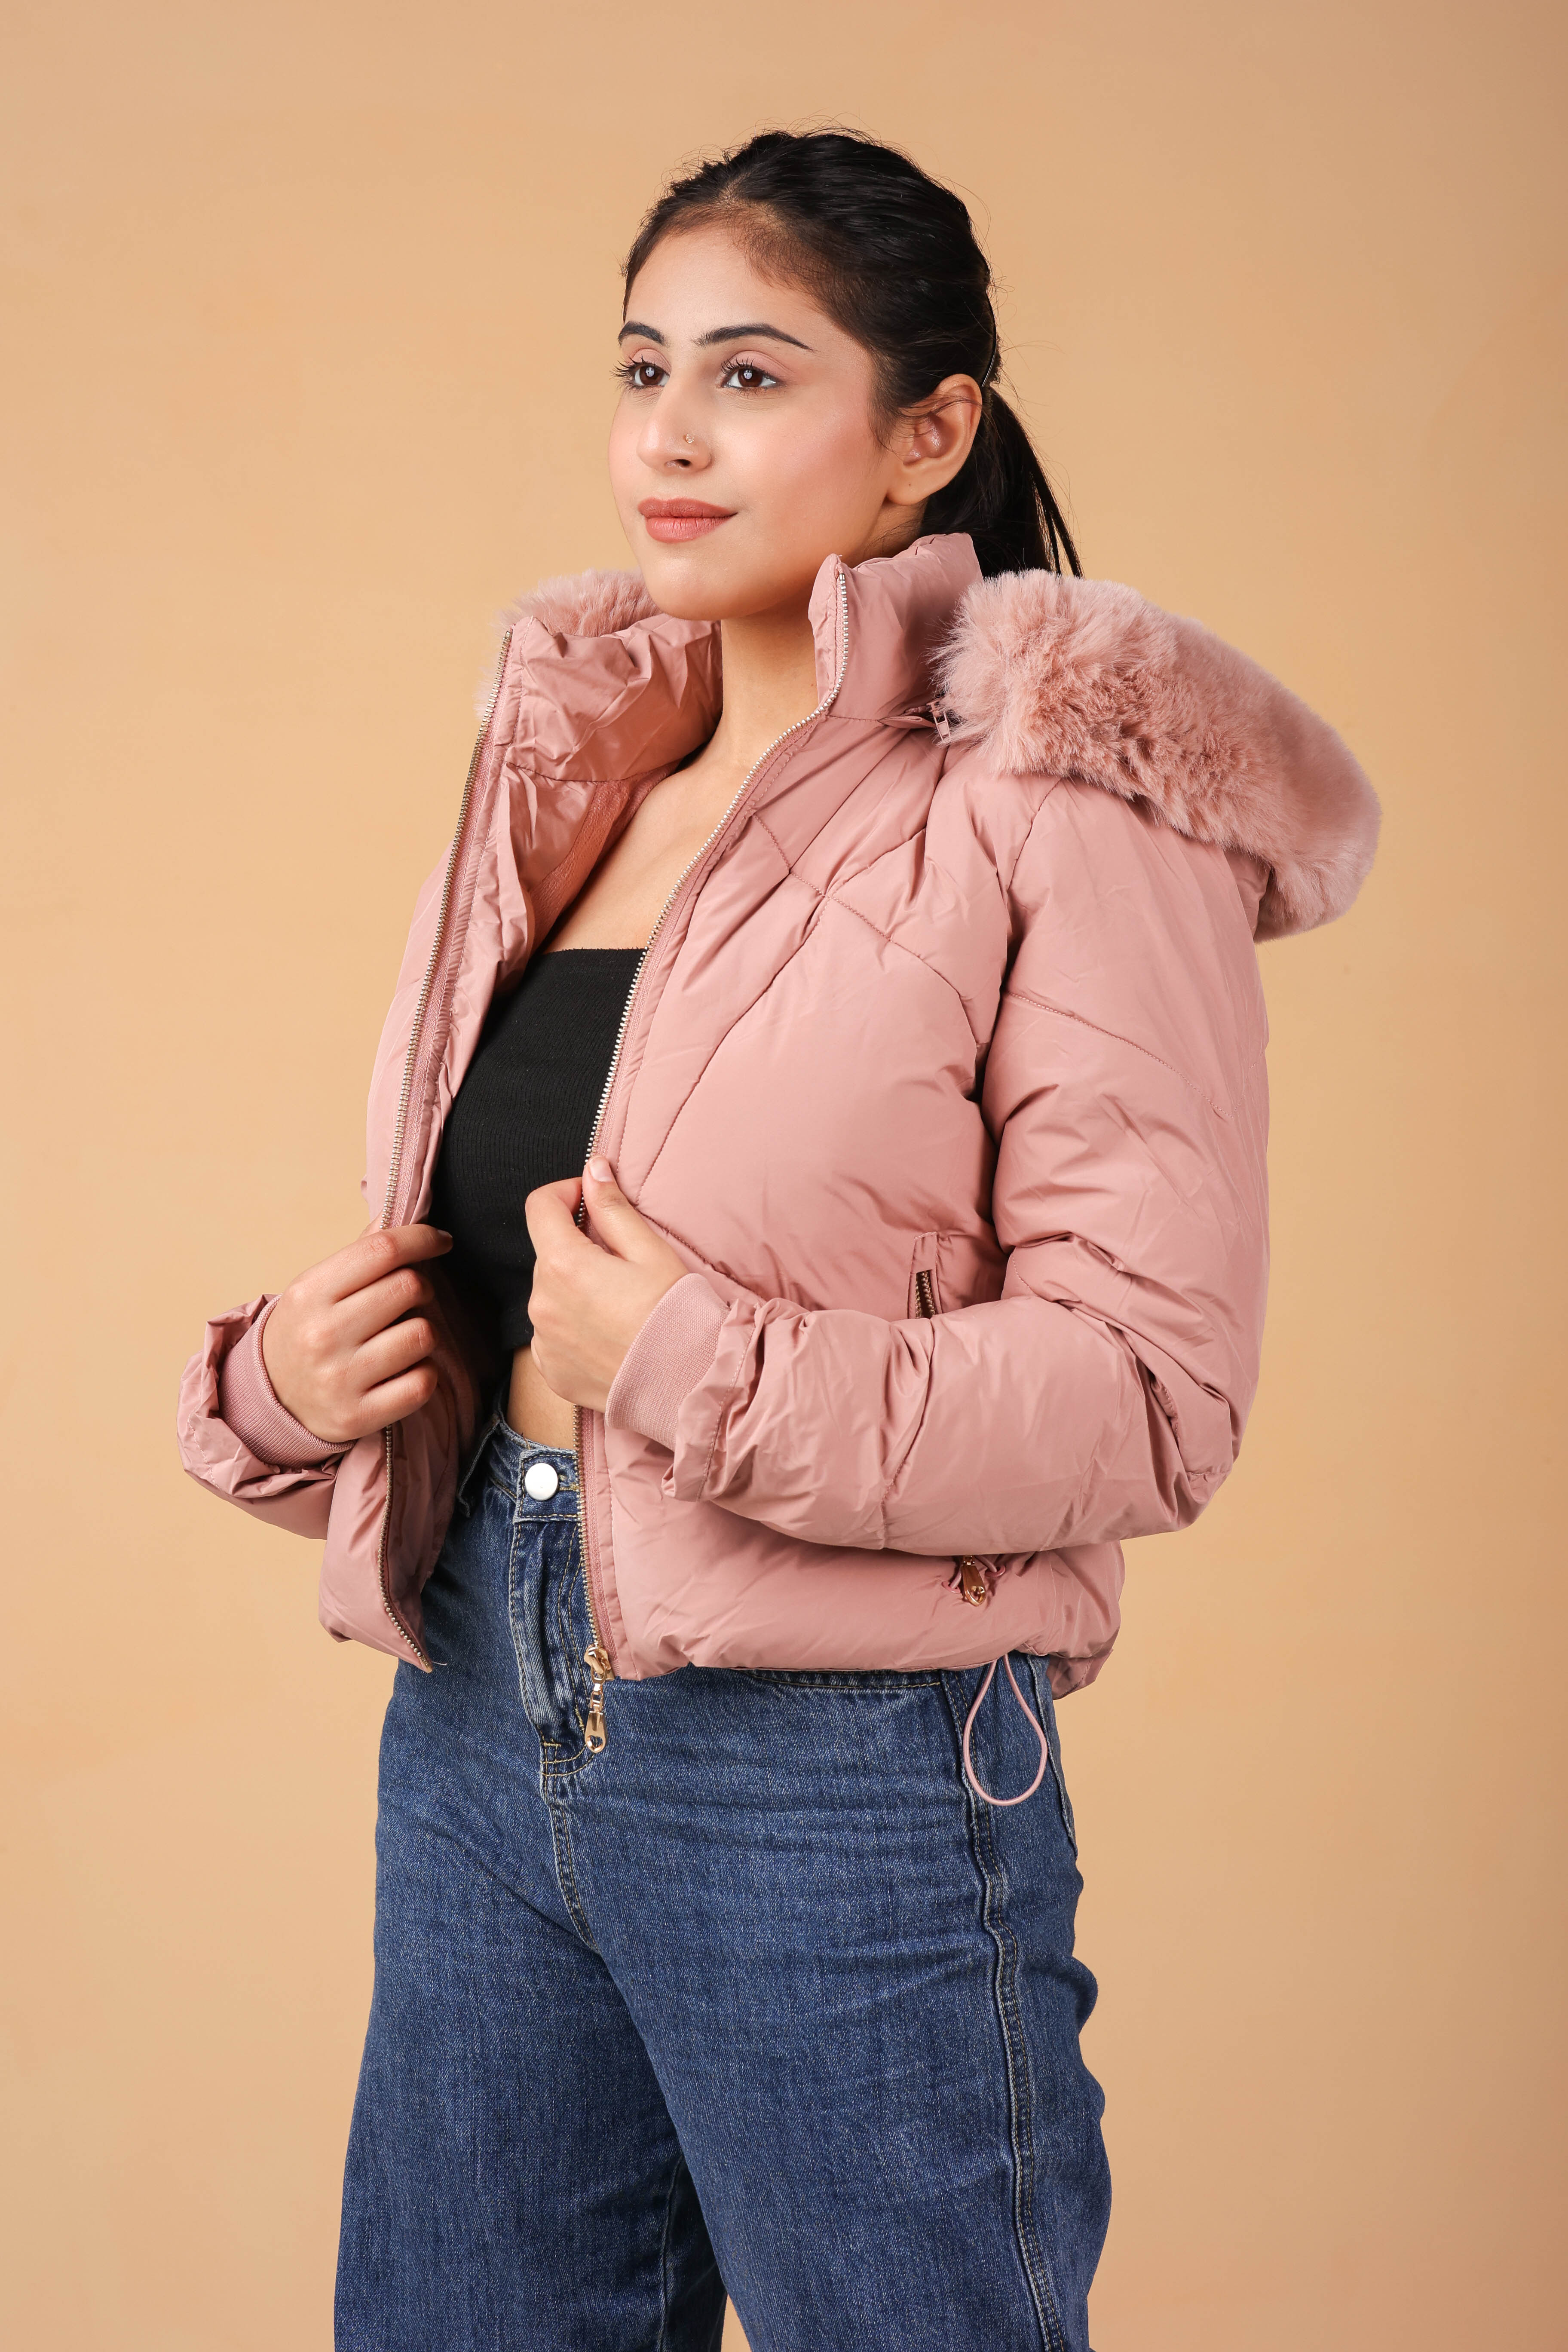 fluffy jacket with fur on hood and velvet fur inside